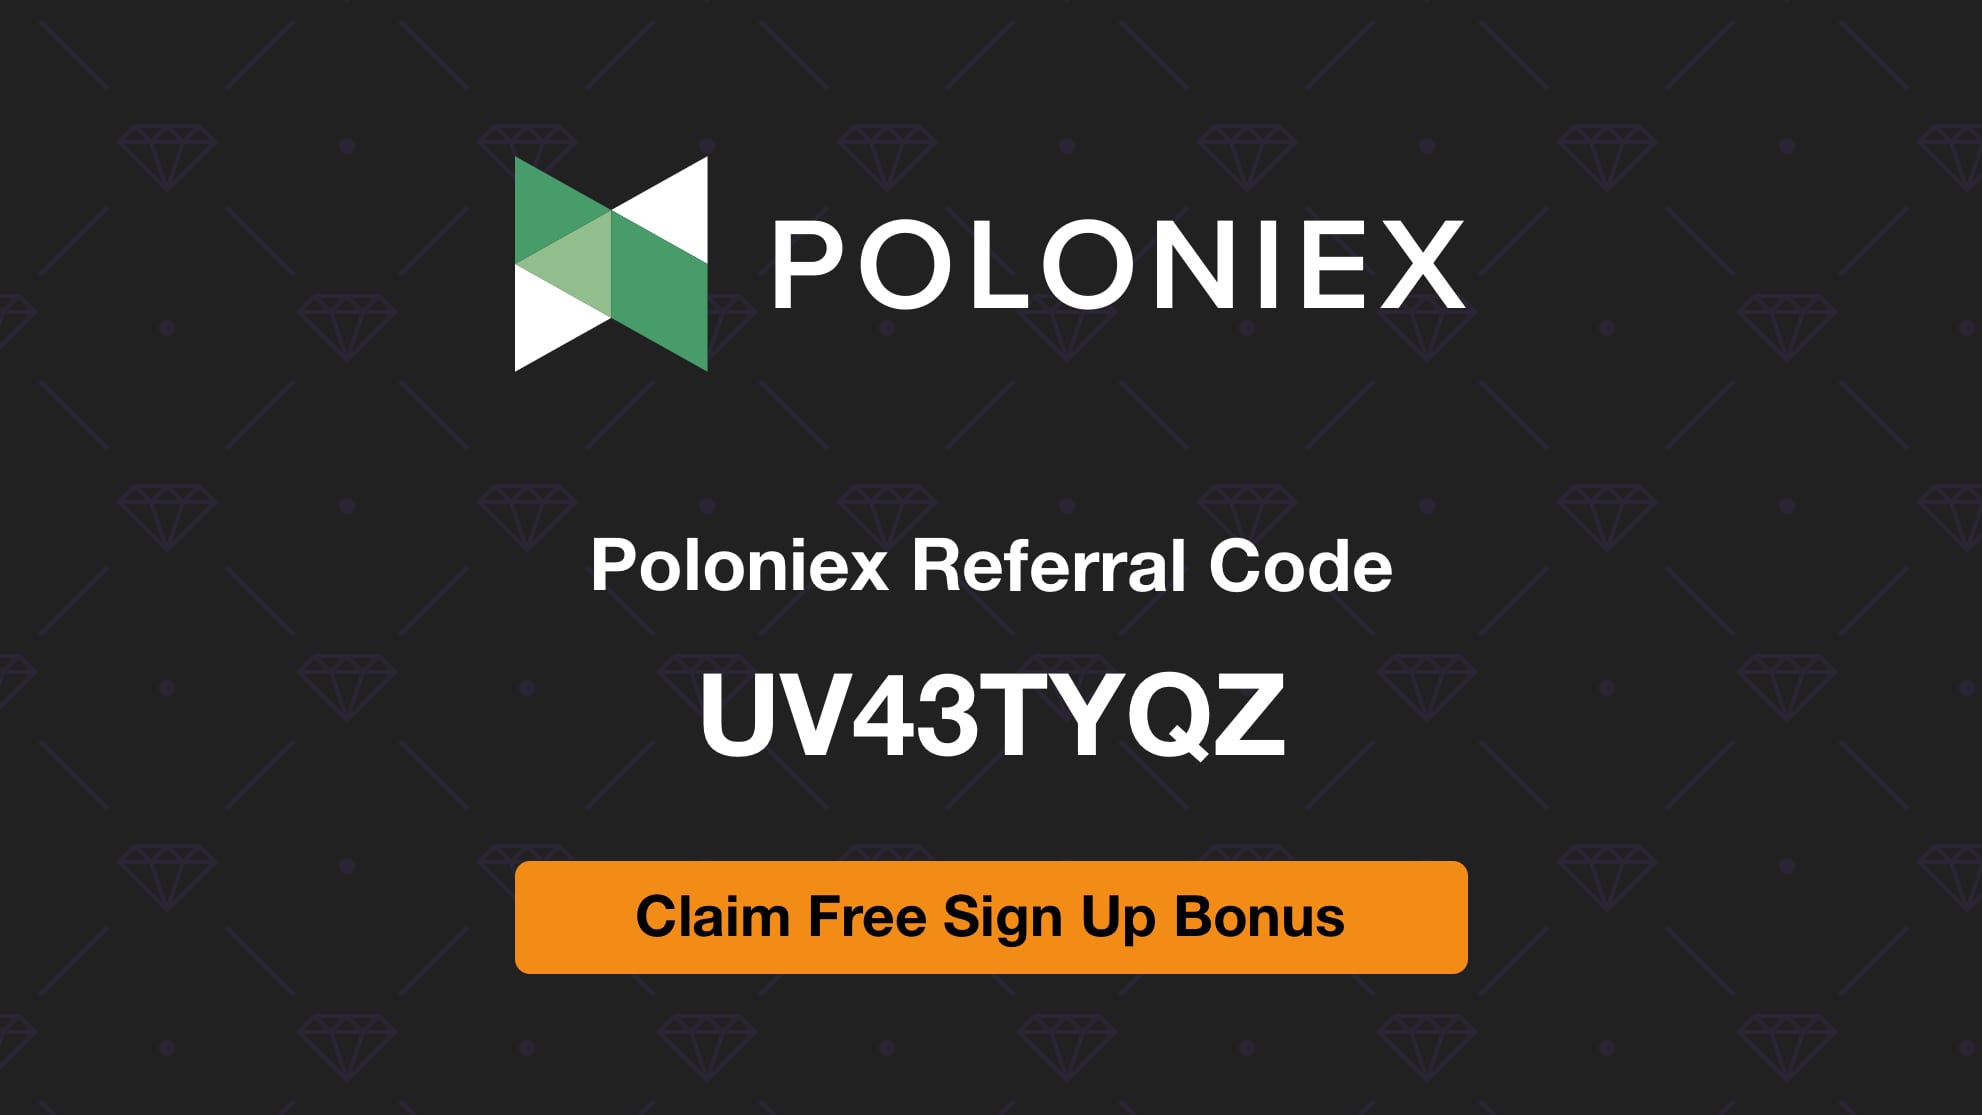 Poloniex Referral Code UV43TYQZ